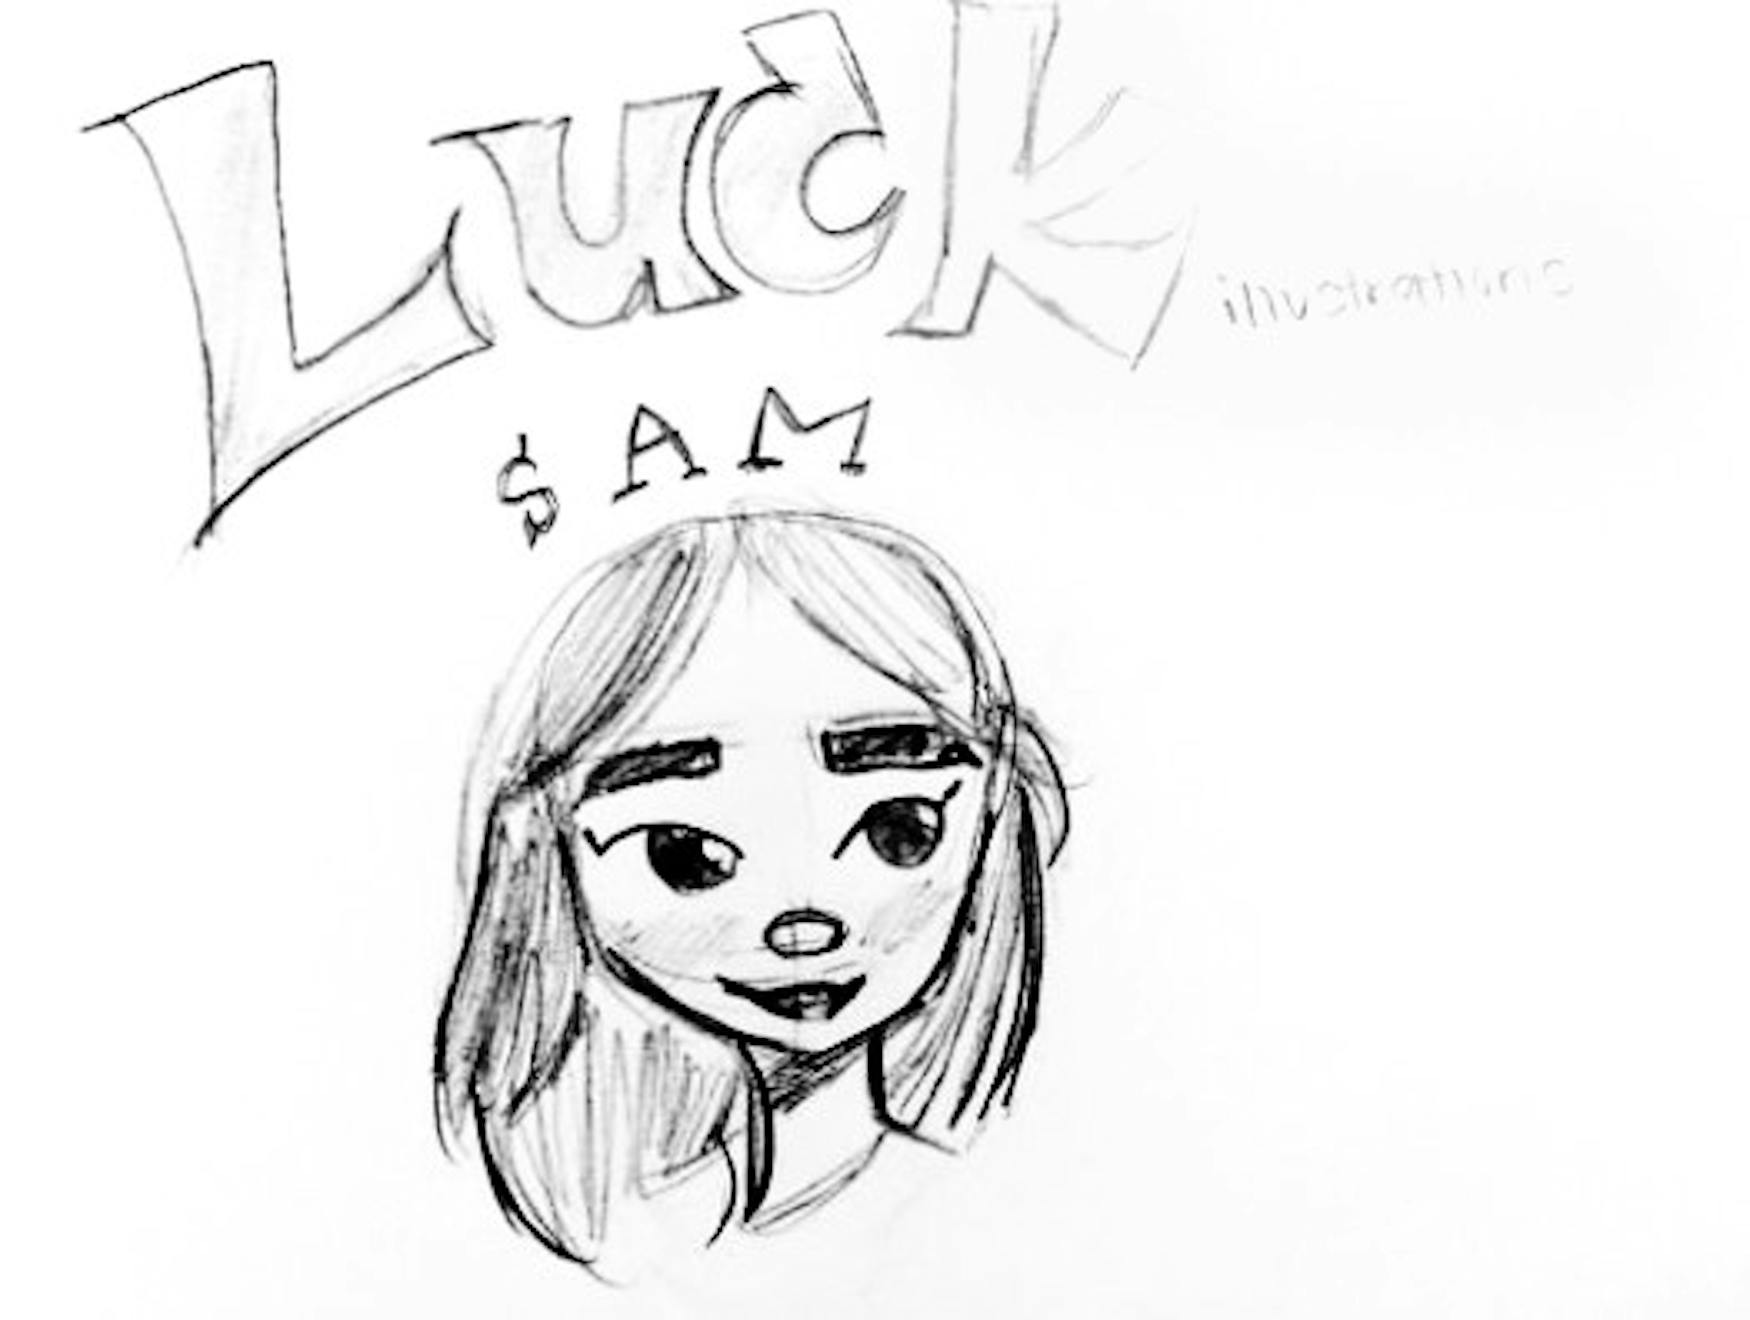 ‘Luck’